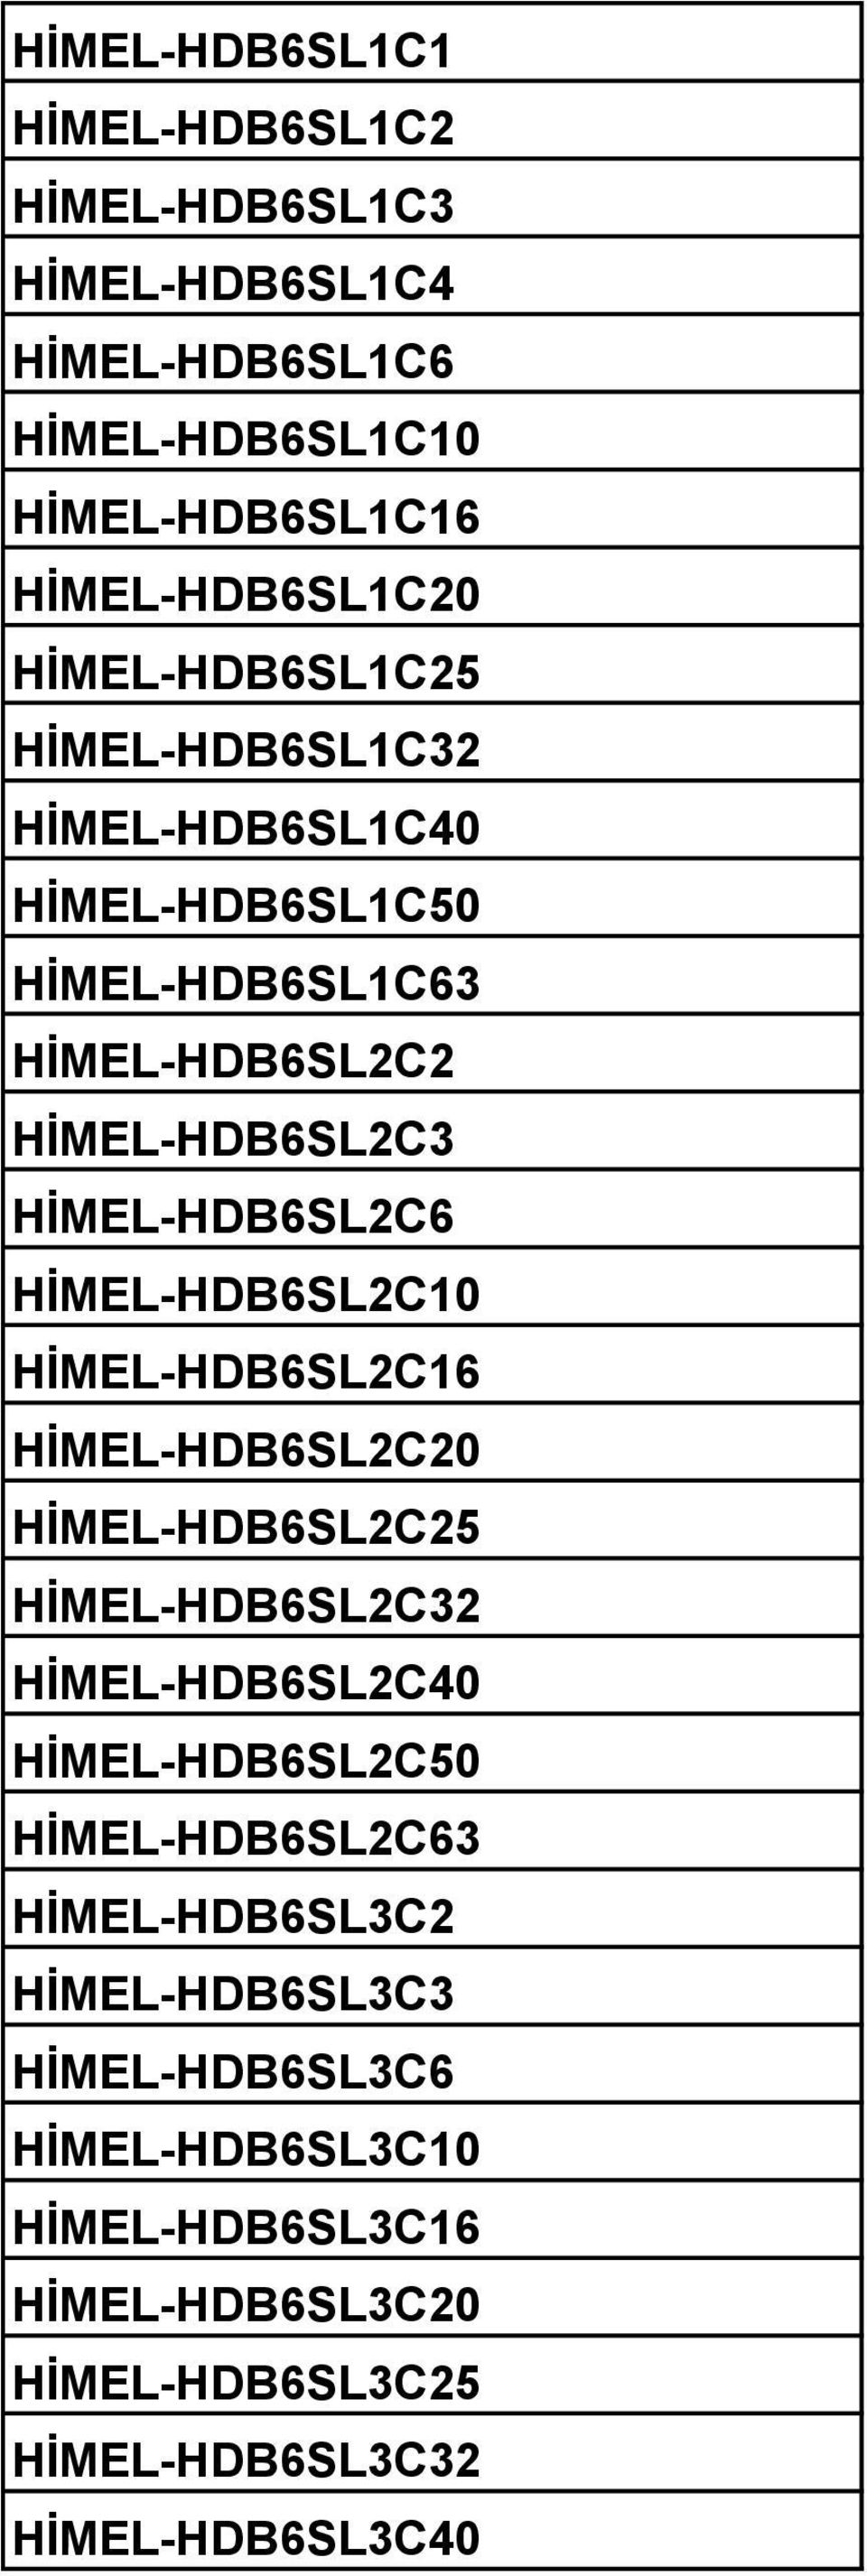 HİMEL-HDB6SL2C10 HİMEL-HDB6SL2C16 HİMEL-HDB6SL2C20 HİMEL-HDB6SL2C25 HİMEL-HDB6SL2C32 HİMEL-HDB6SL2C40 HİMEL-HDB6SL2C50 HİMEL-HDB6SL2C63